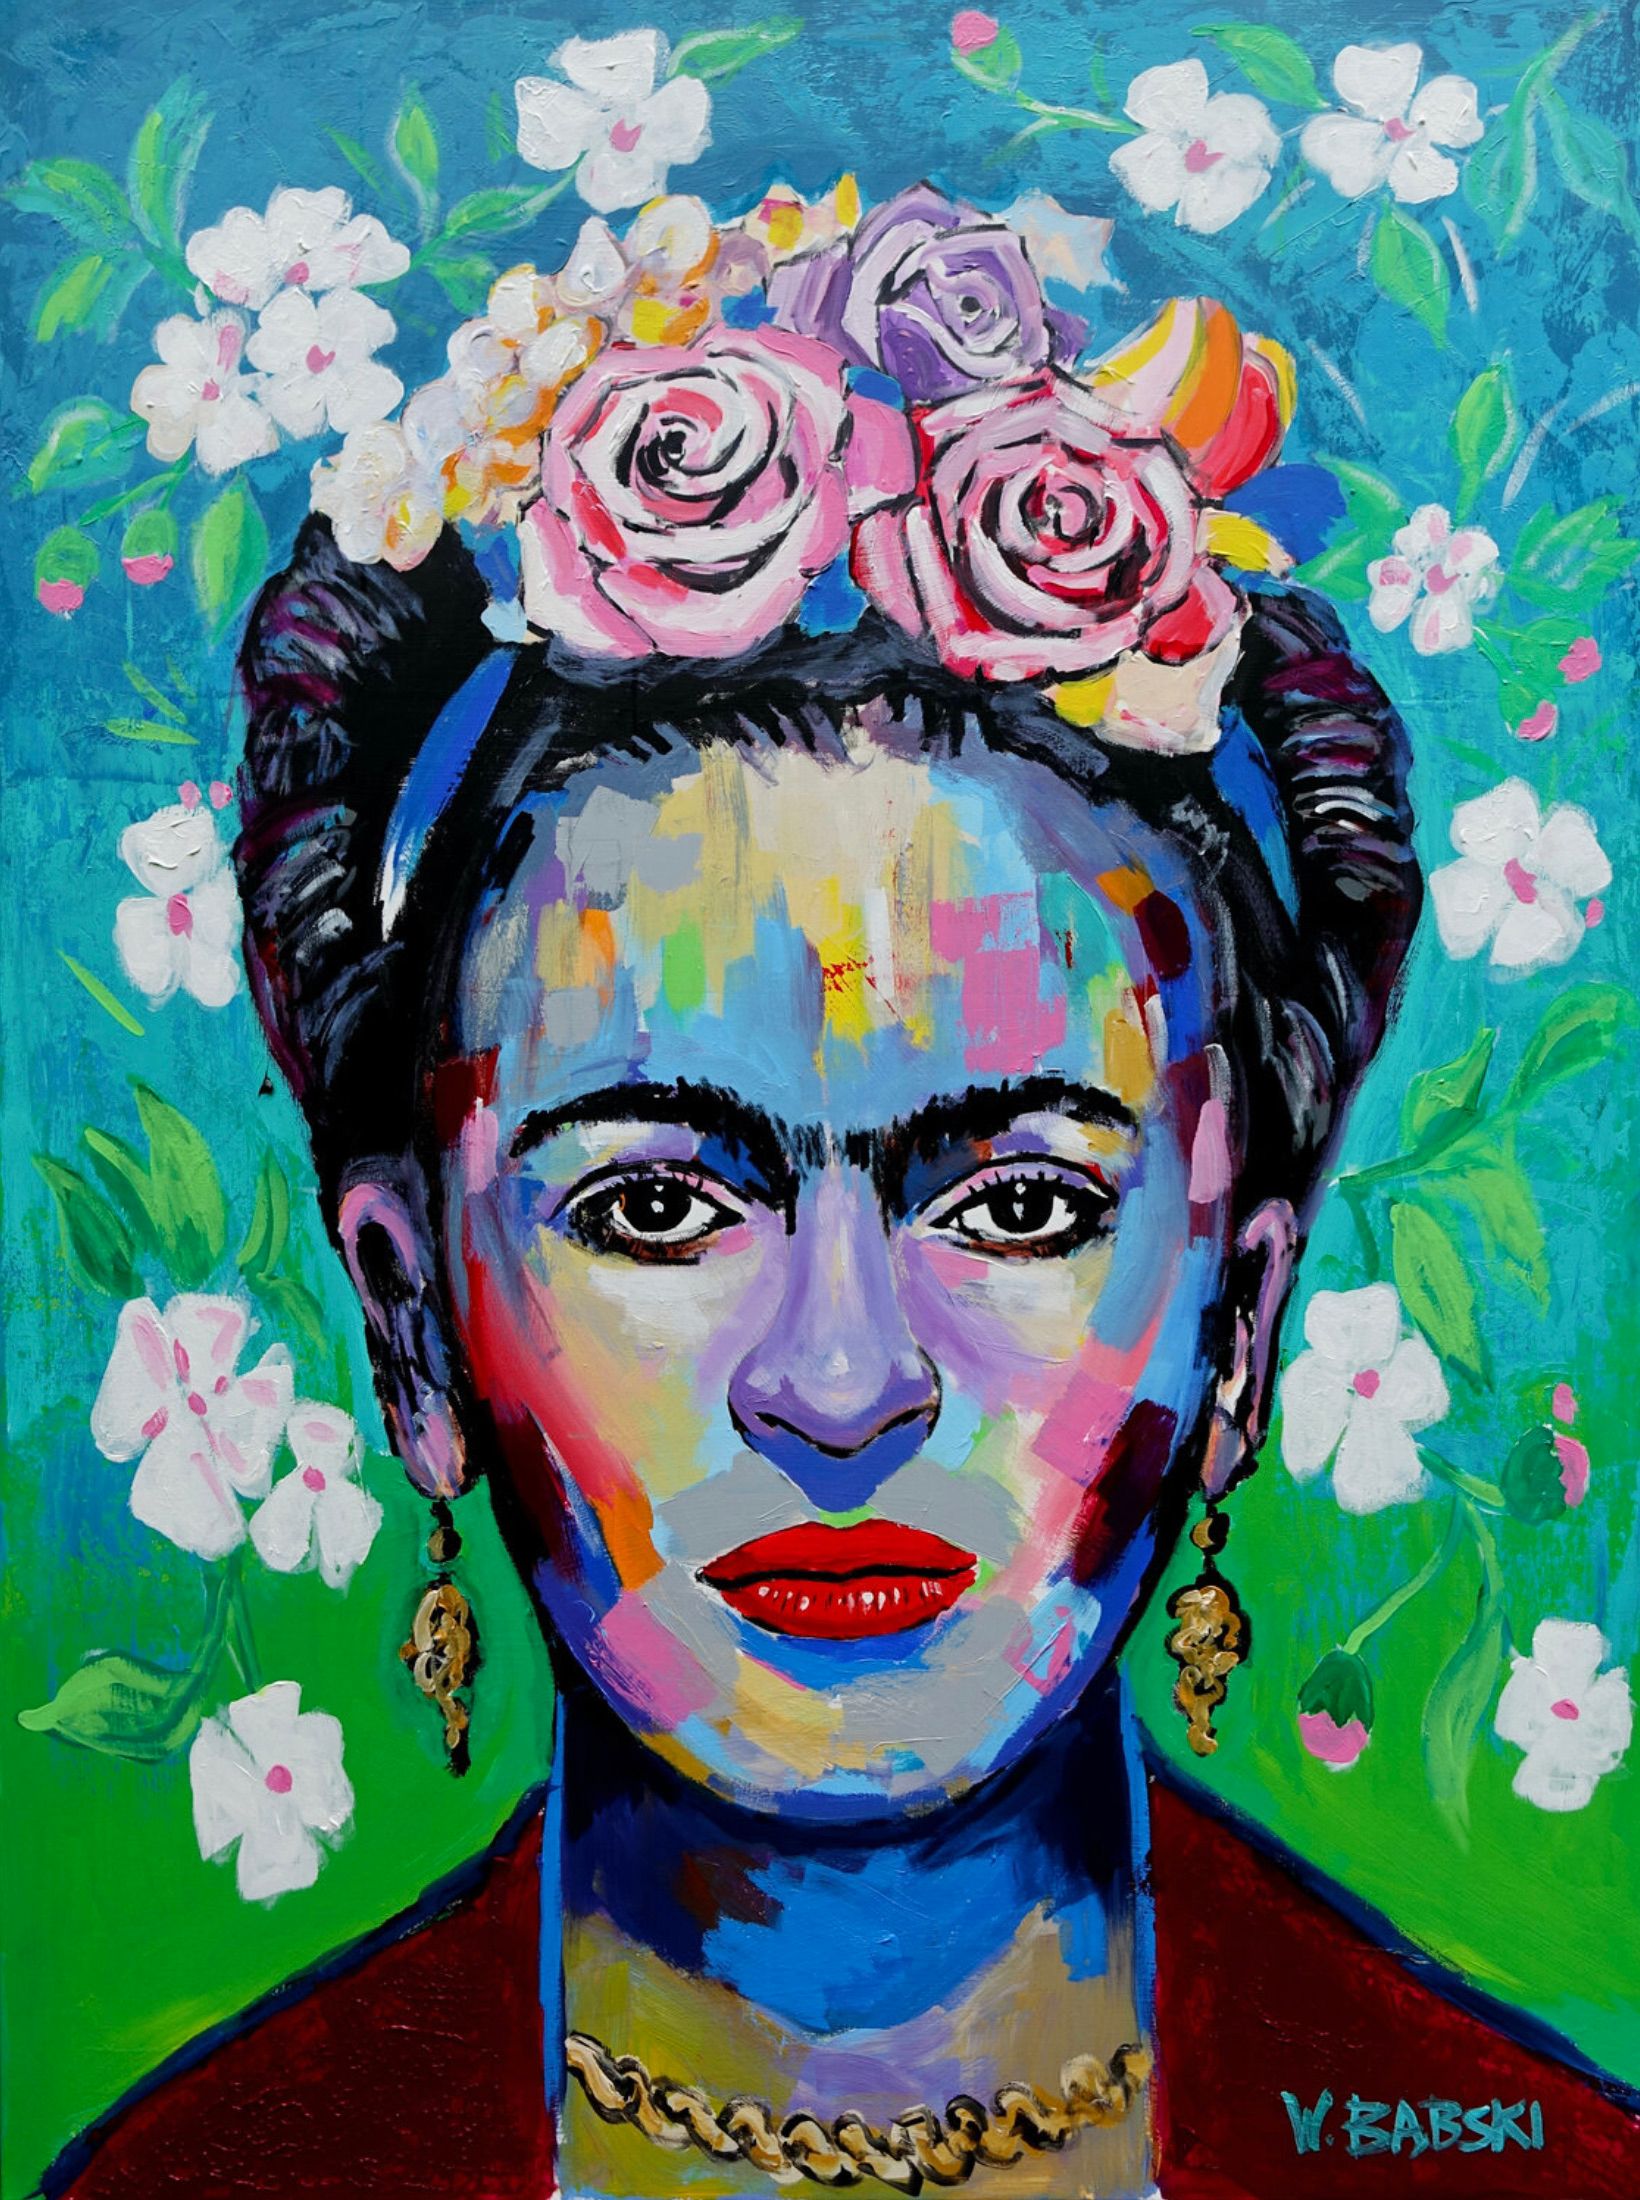 Wojtek Babski Frida 2, colorido retrato de la pintora Frida Kahlo